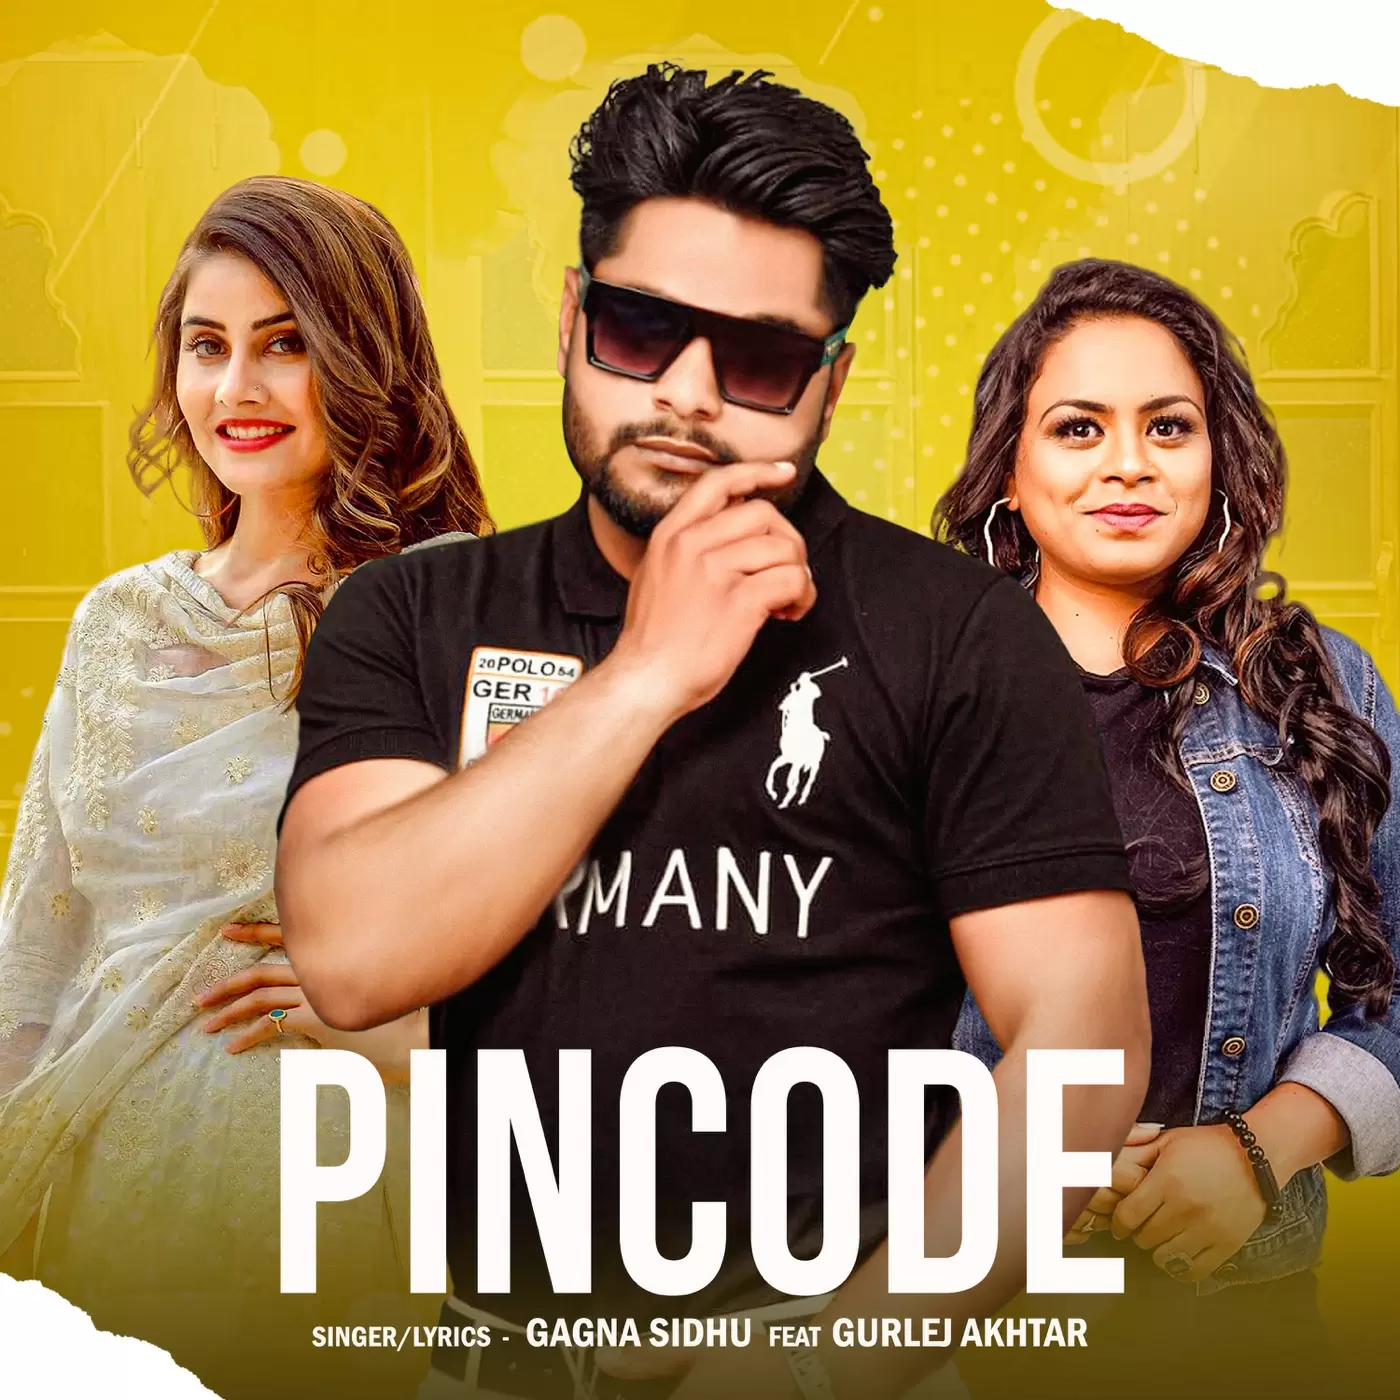 Pincode Gagna Sidhu Mp3 Download Song - Mr-Punjab